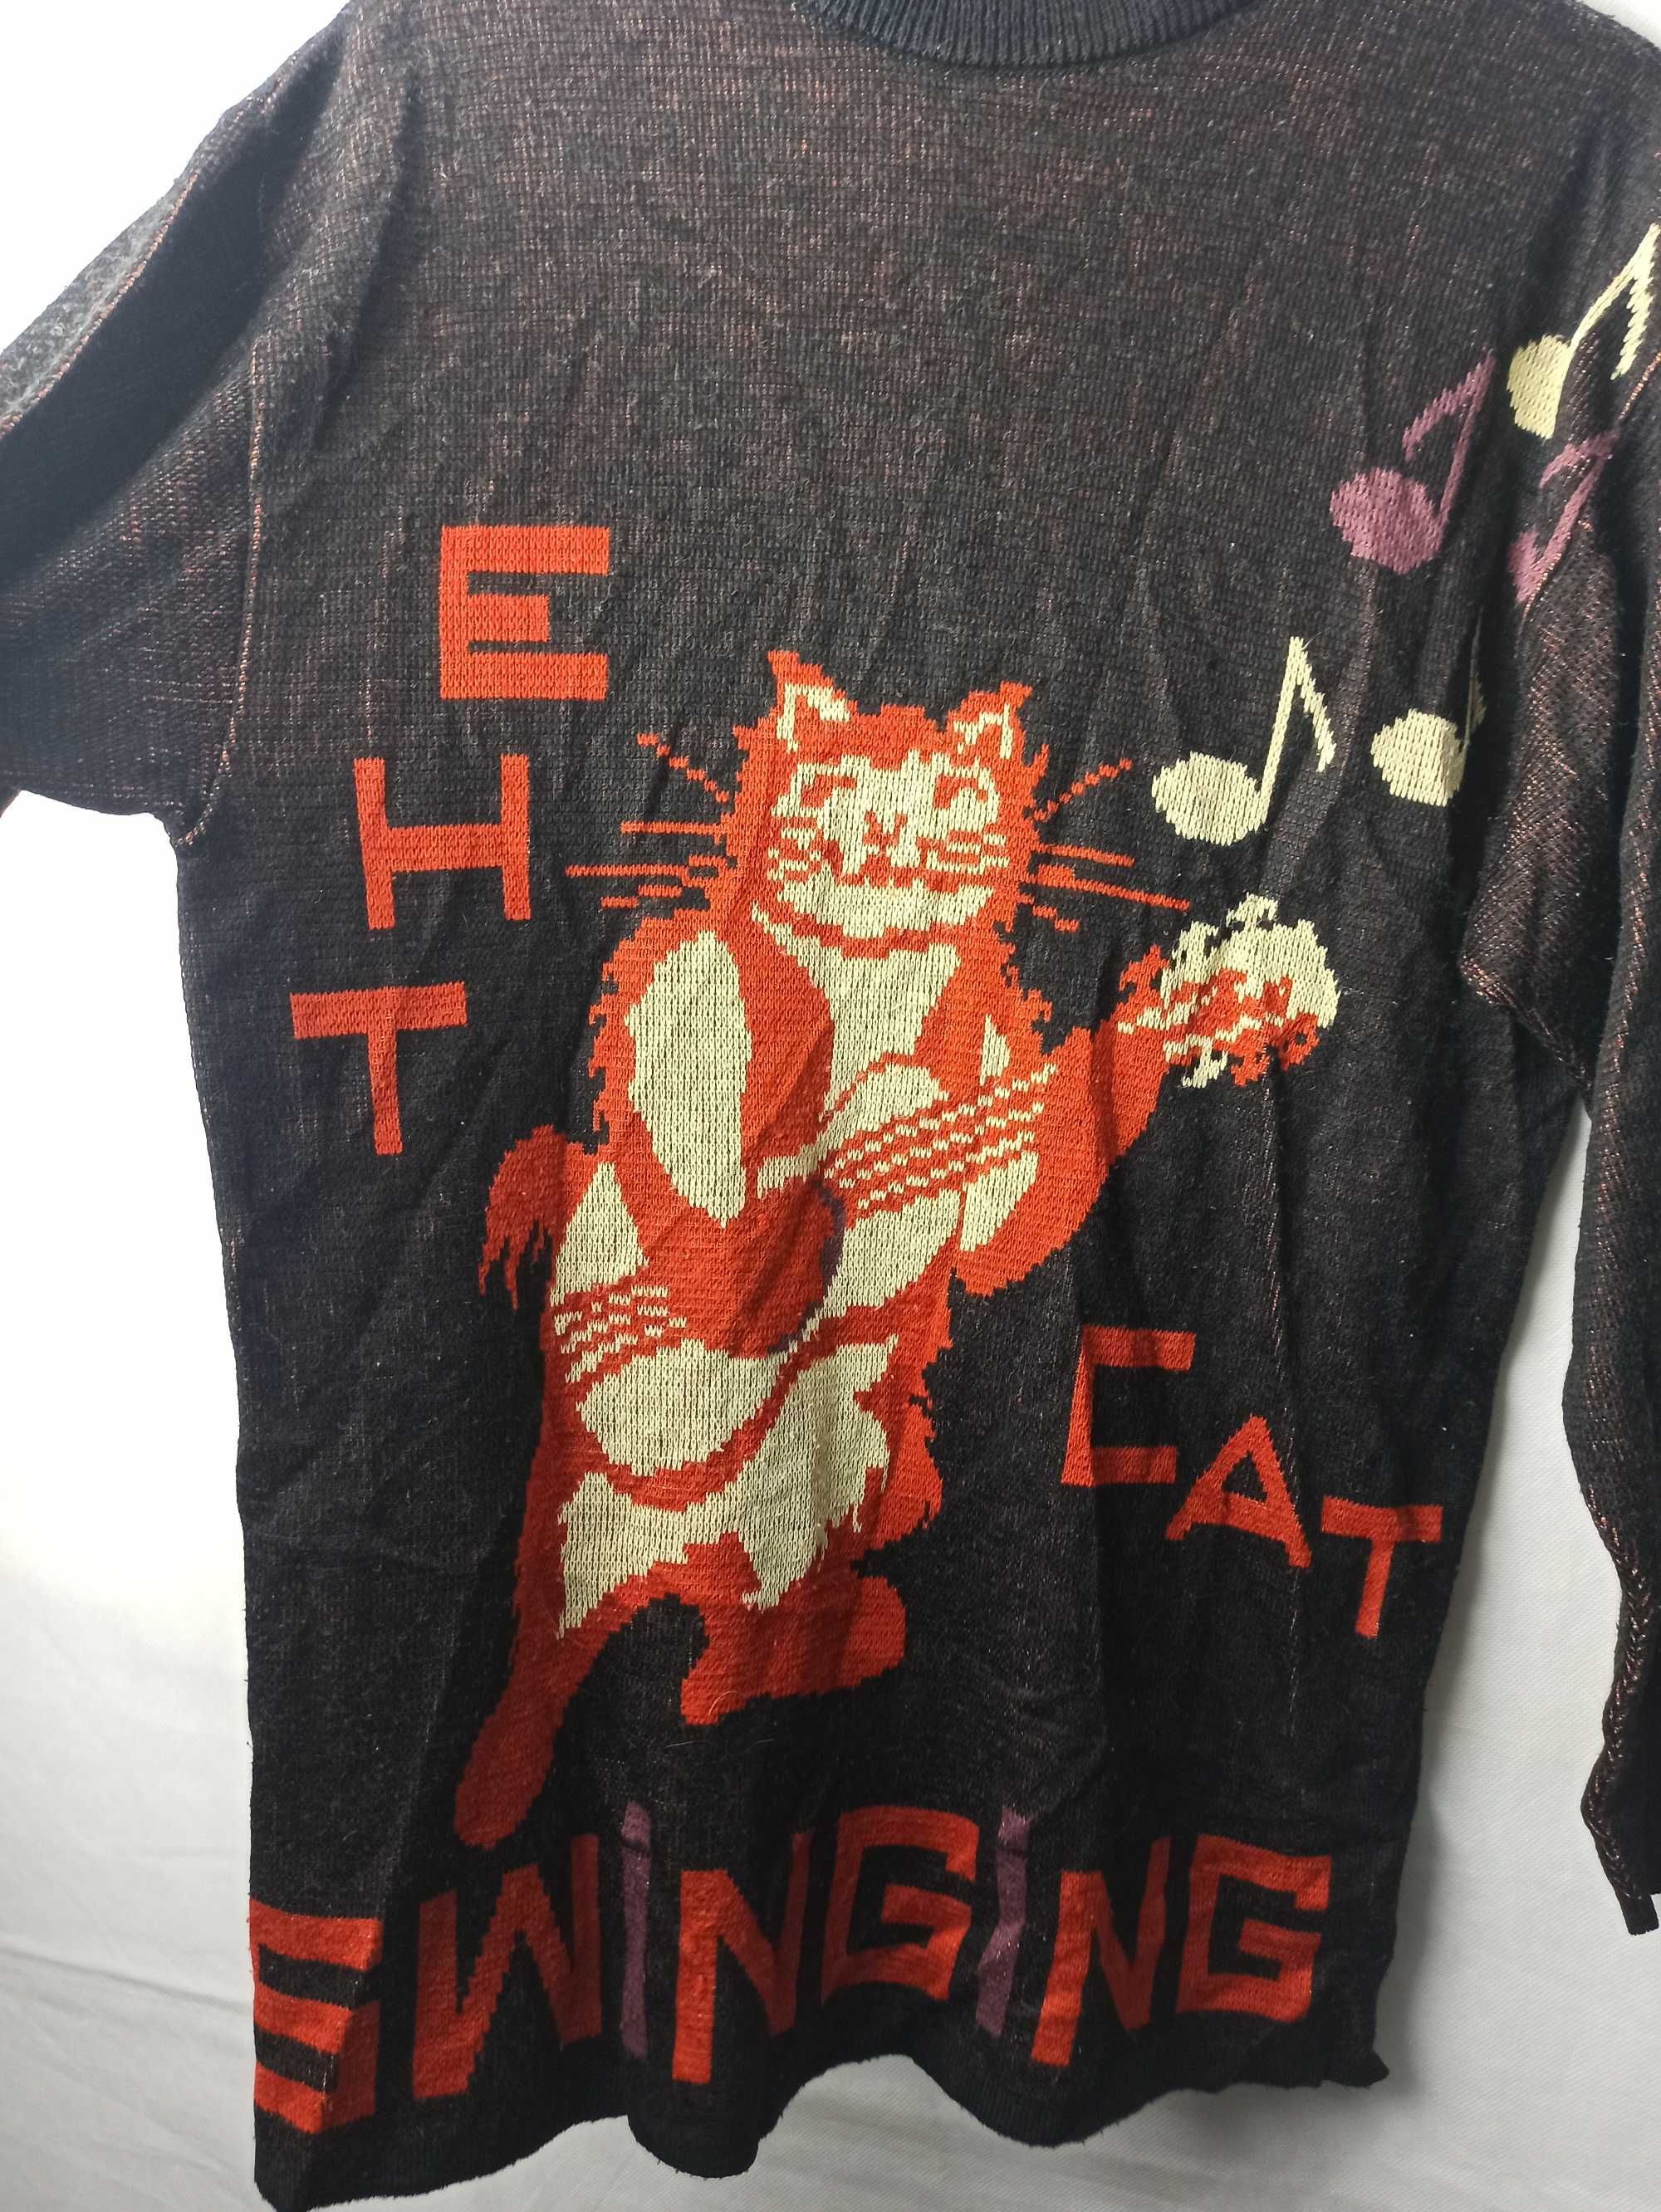 The Swinging Cat Vintage 90s Jumper długi sweter